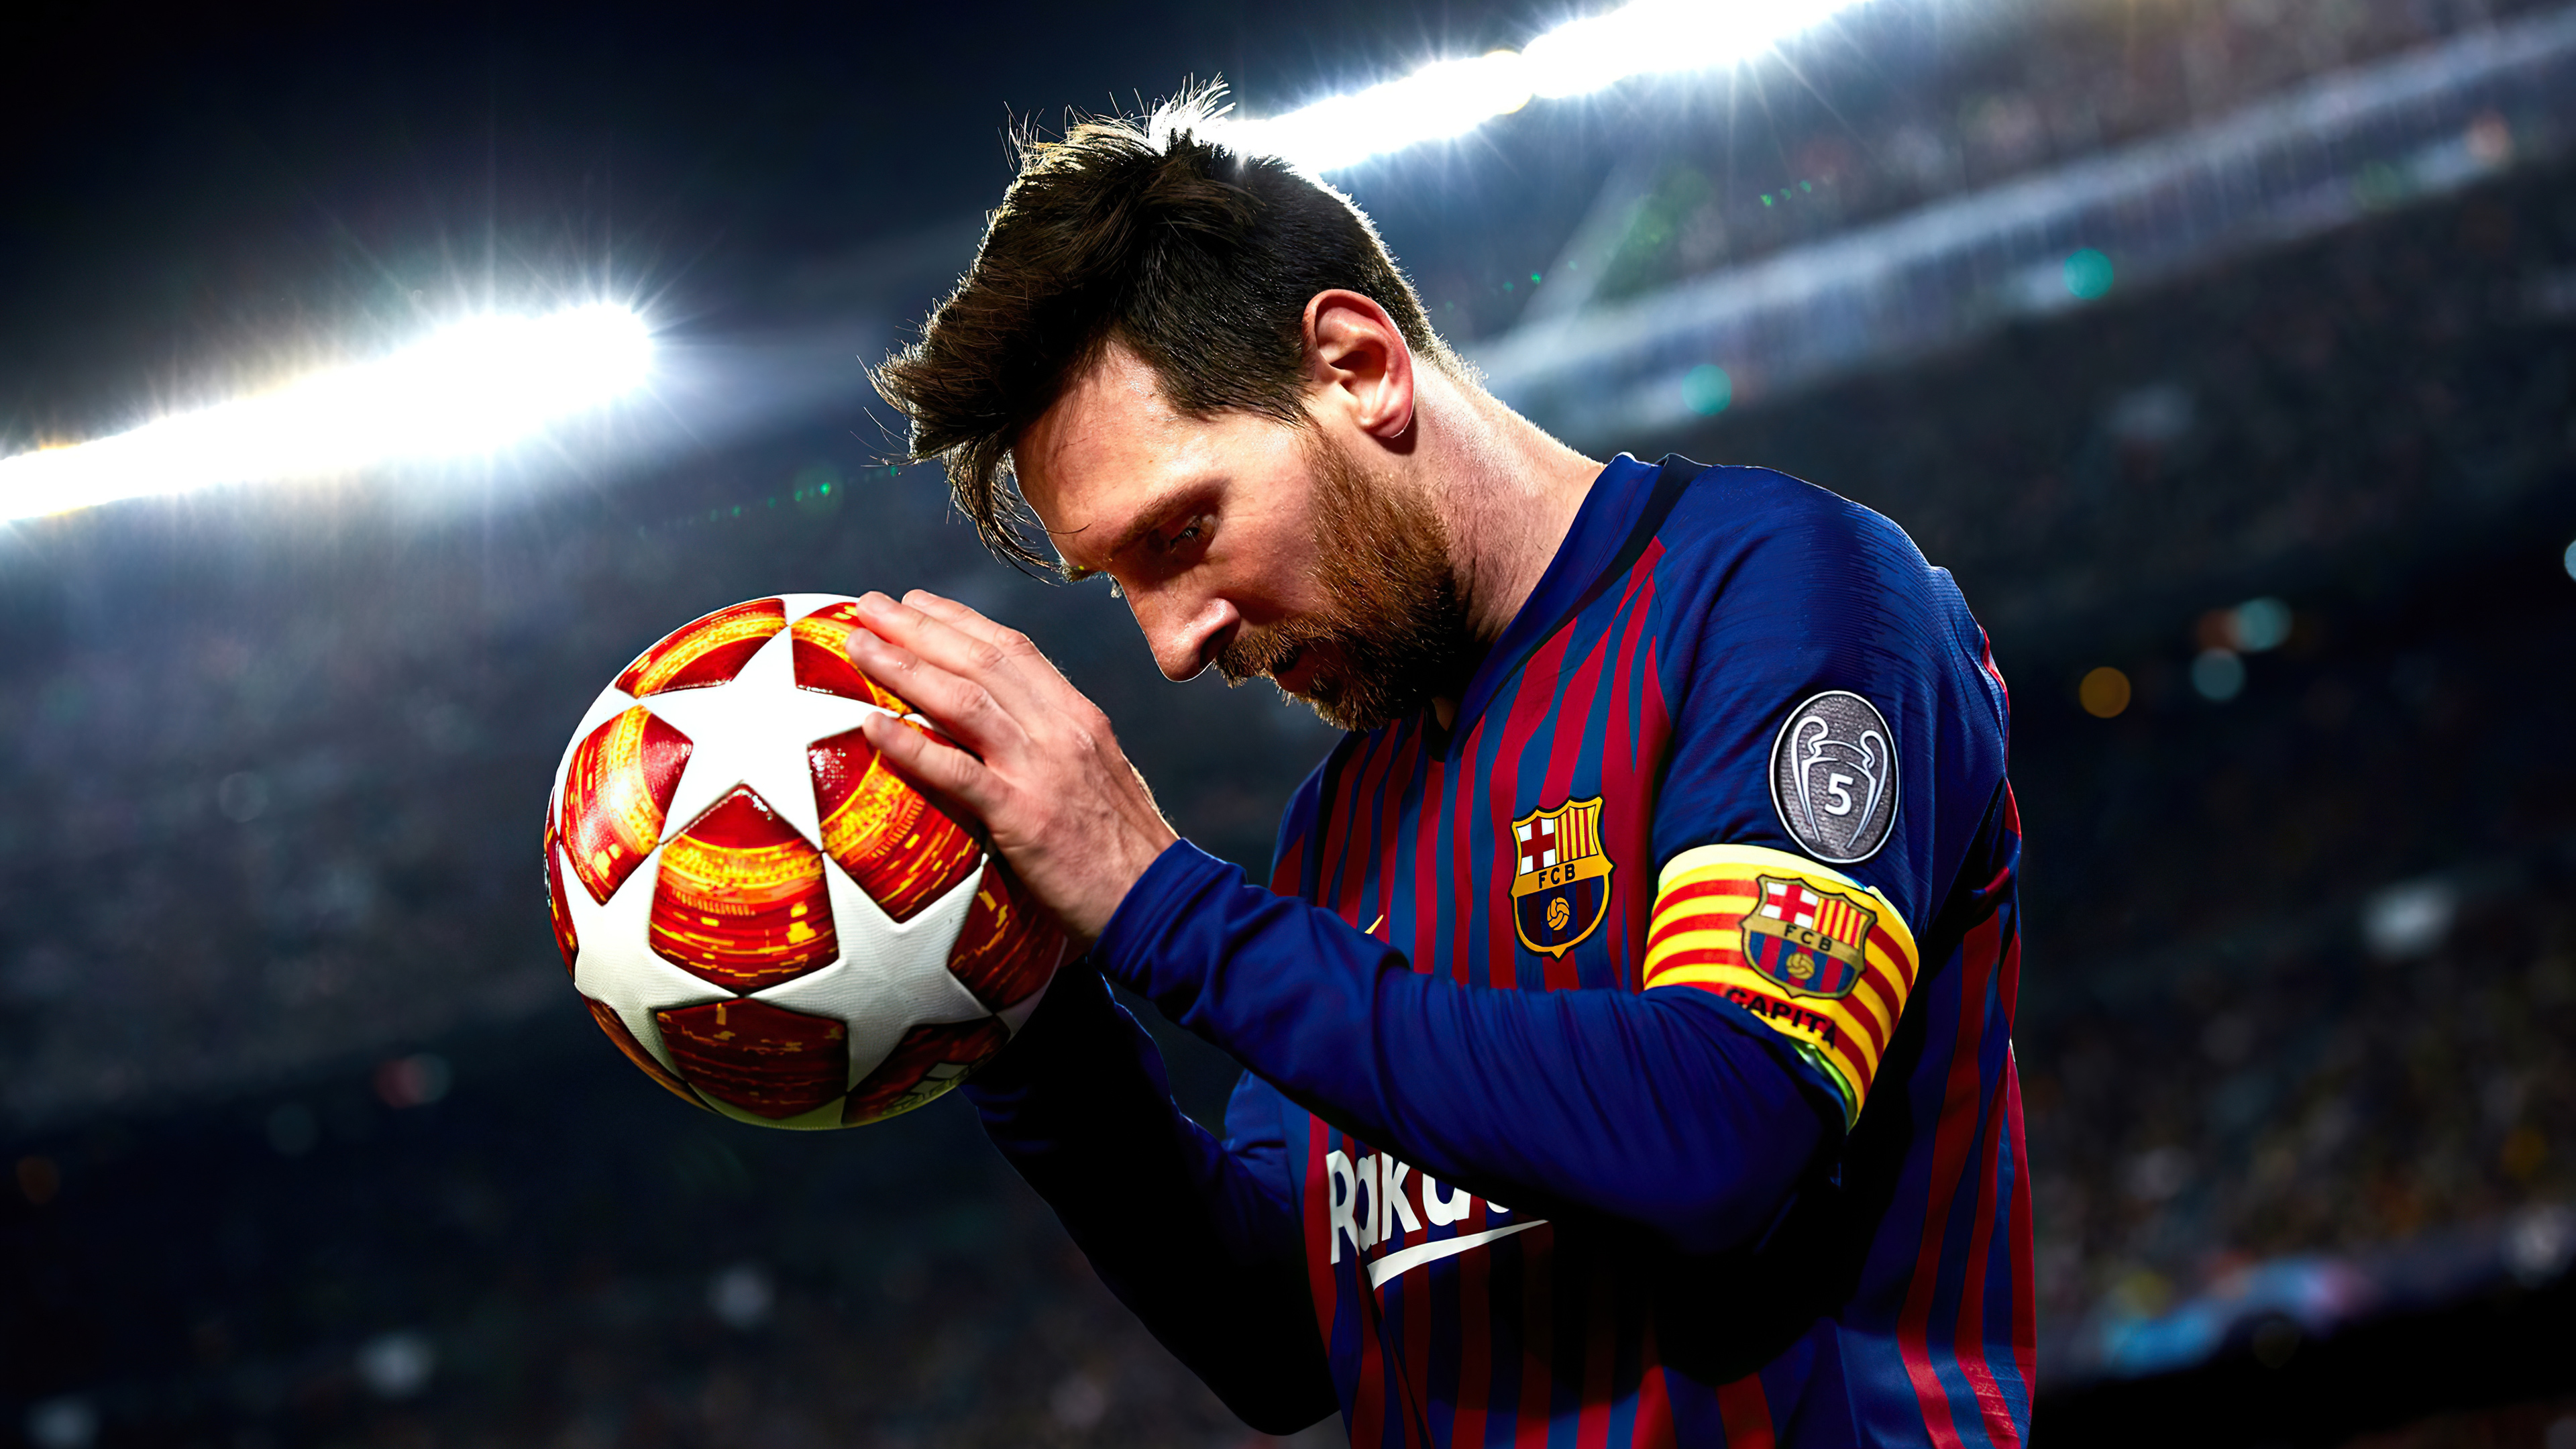 Hình nền Messi làm nền cho máy tính hoặc điện thoại của bạn sẽ khiến bạn cảm thấy sự mạnh mẽ và khát khao thành công mỗi khi bắt đầu một ngày mới. Đừng bỏ lỡ cơ hội để tận hưởng hình ảnh của cầu thủ bóng đá vĩ đại nhất thế giới này.